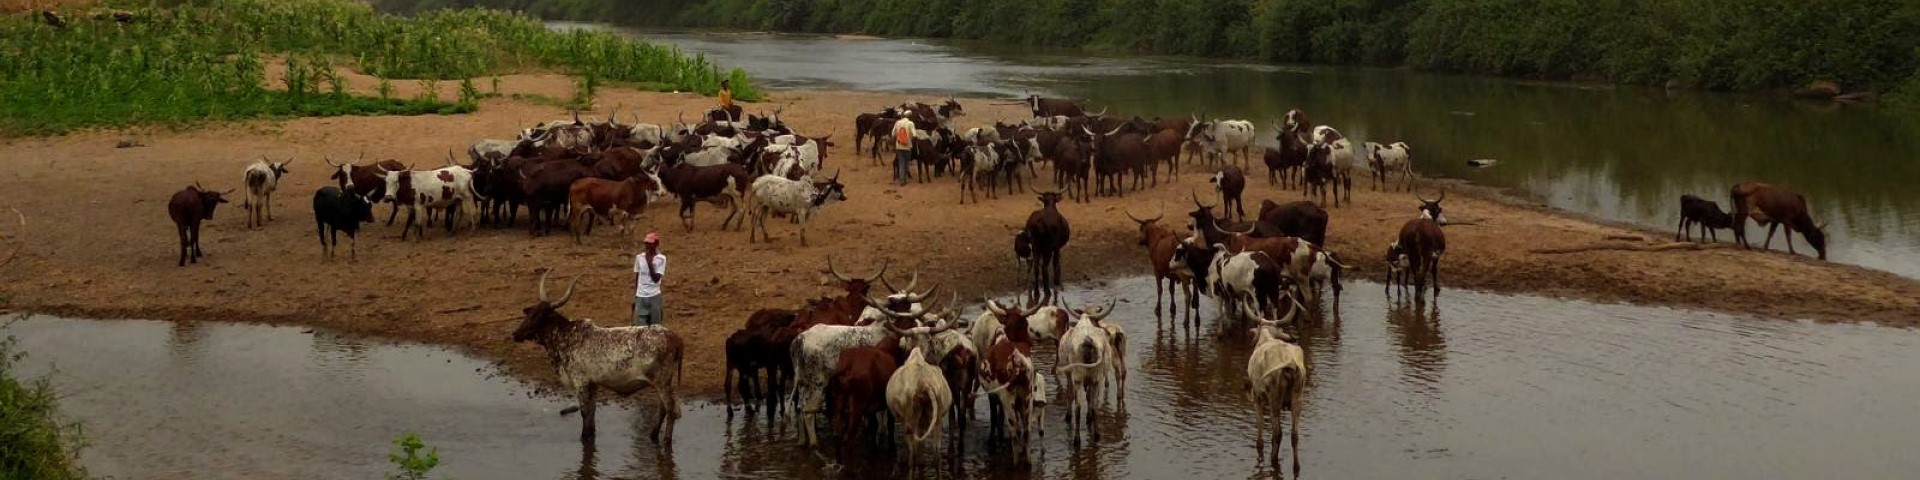 Landwirt*innen stehen mit ihrer Rinderherde an einem Fluss. Copyright: GIZ